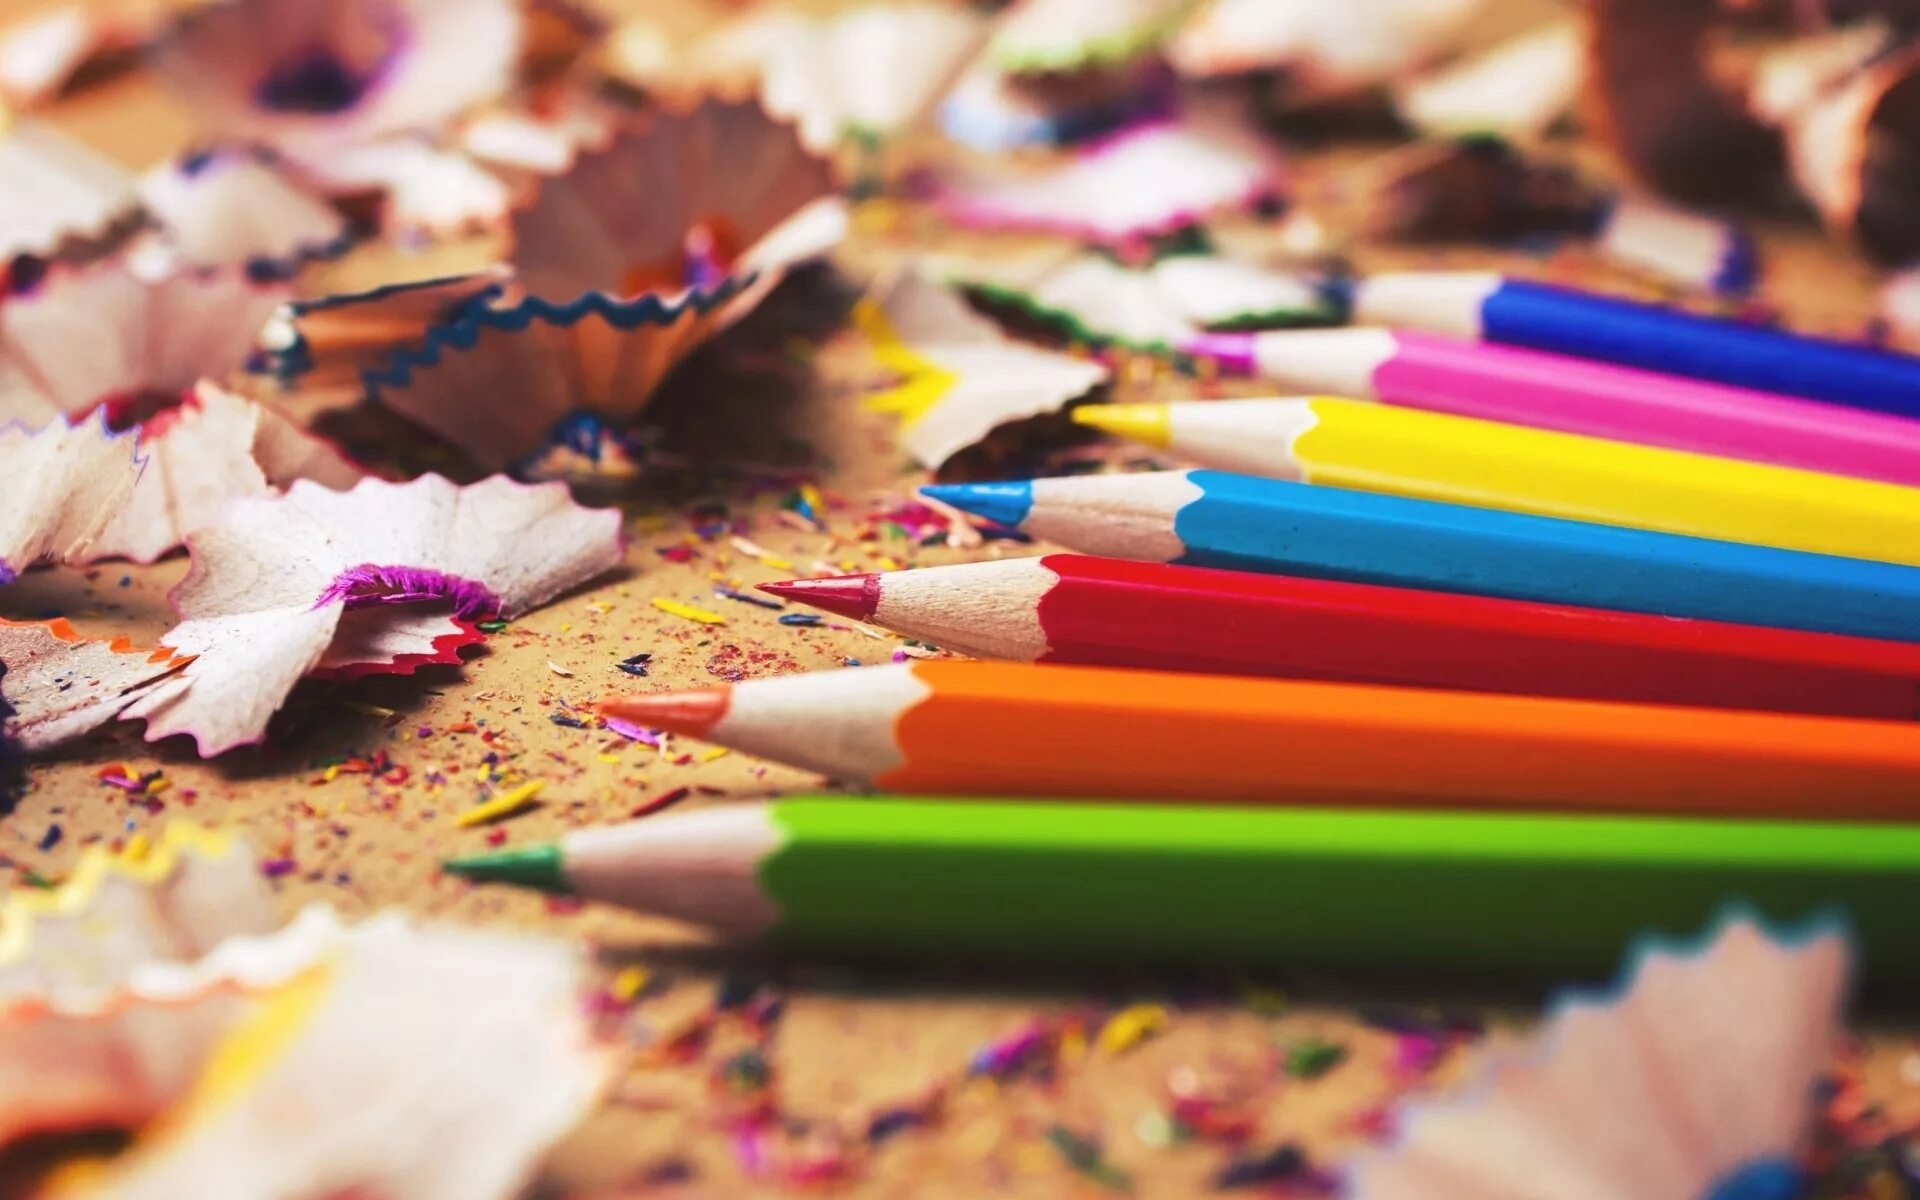 Какие картинки можно. Цветные карандаши на столе. Разбросанные цветные карандаши. Интересные карандаши. Раскиданные карандаши на столе.